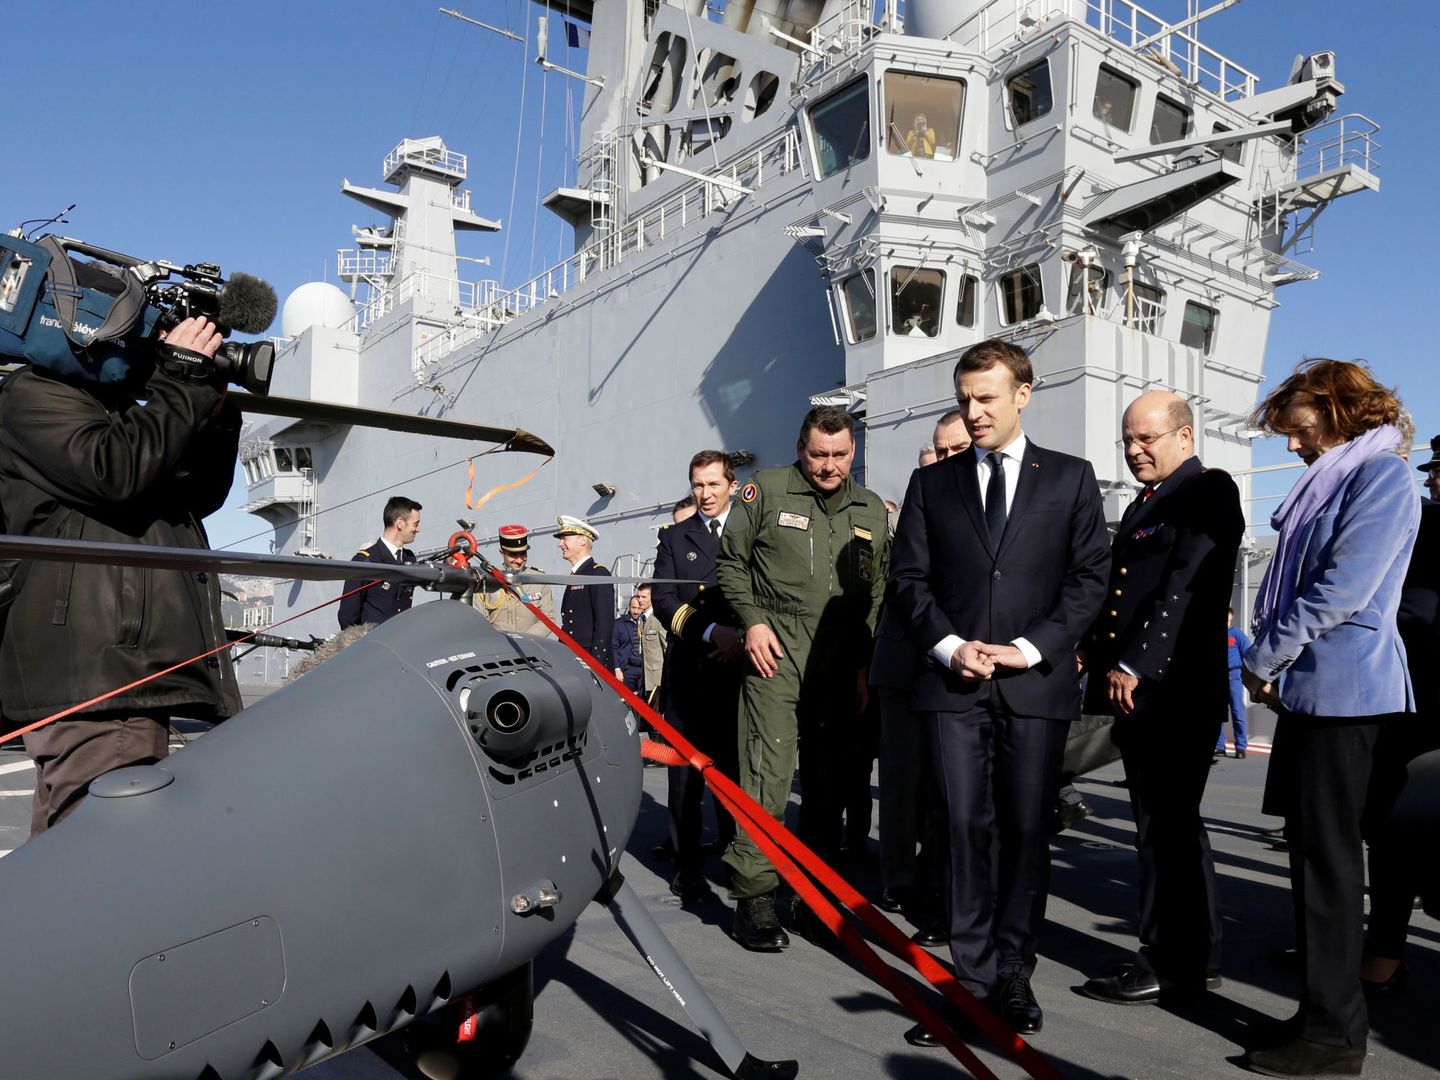 El presidente francés Emmanuel Macron ante uno de los drones del ejército francés. (Foto: Reuters)